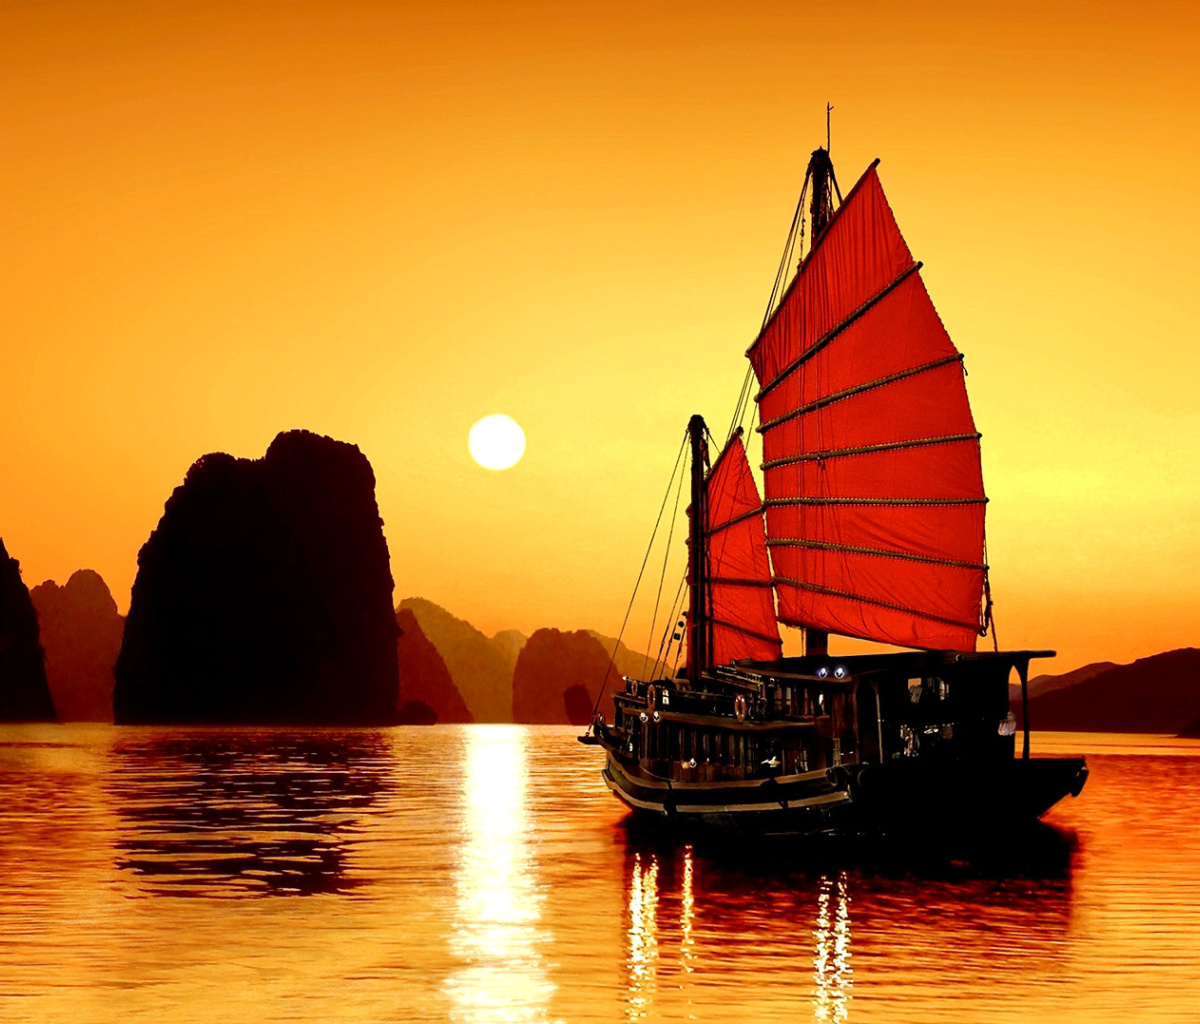 Обои Halong Bay, Vietnama in Sunset 1200x1024